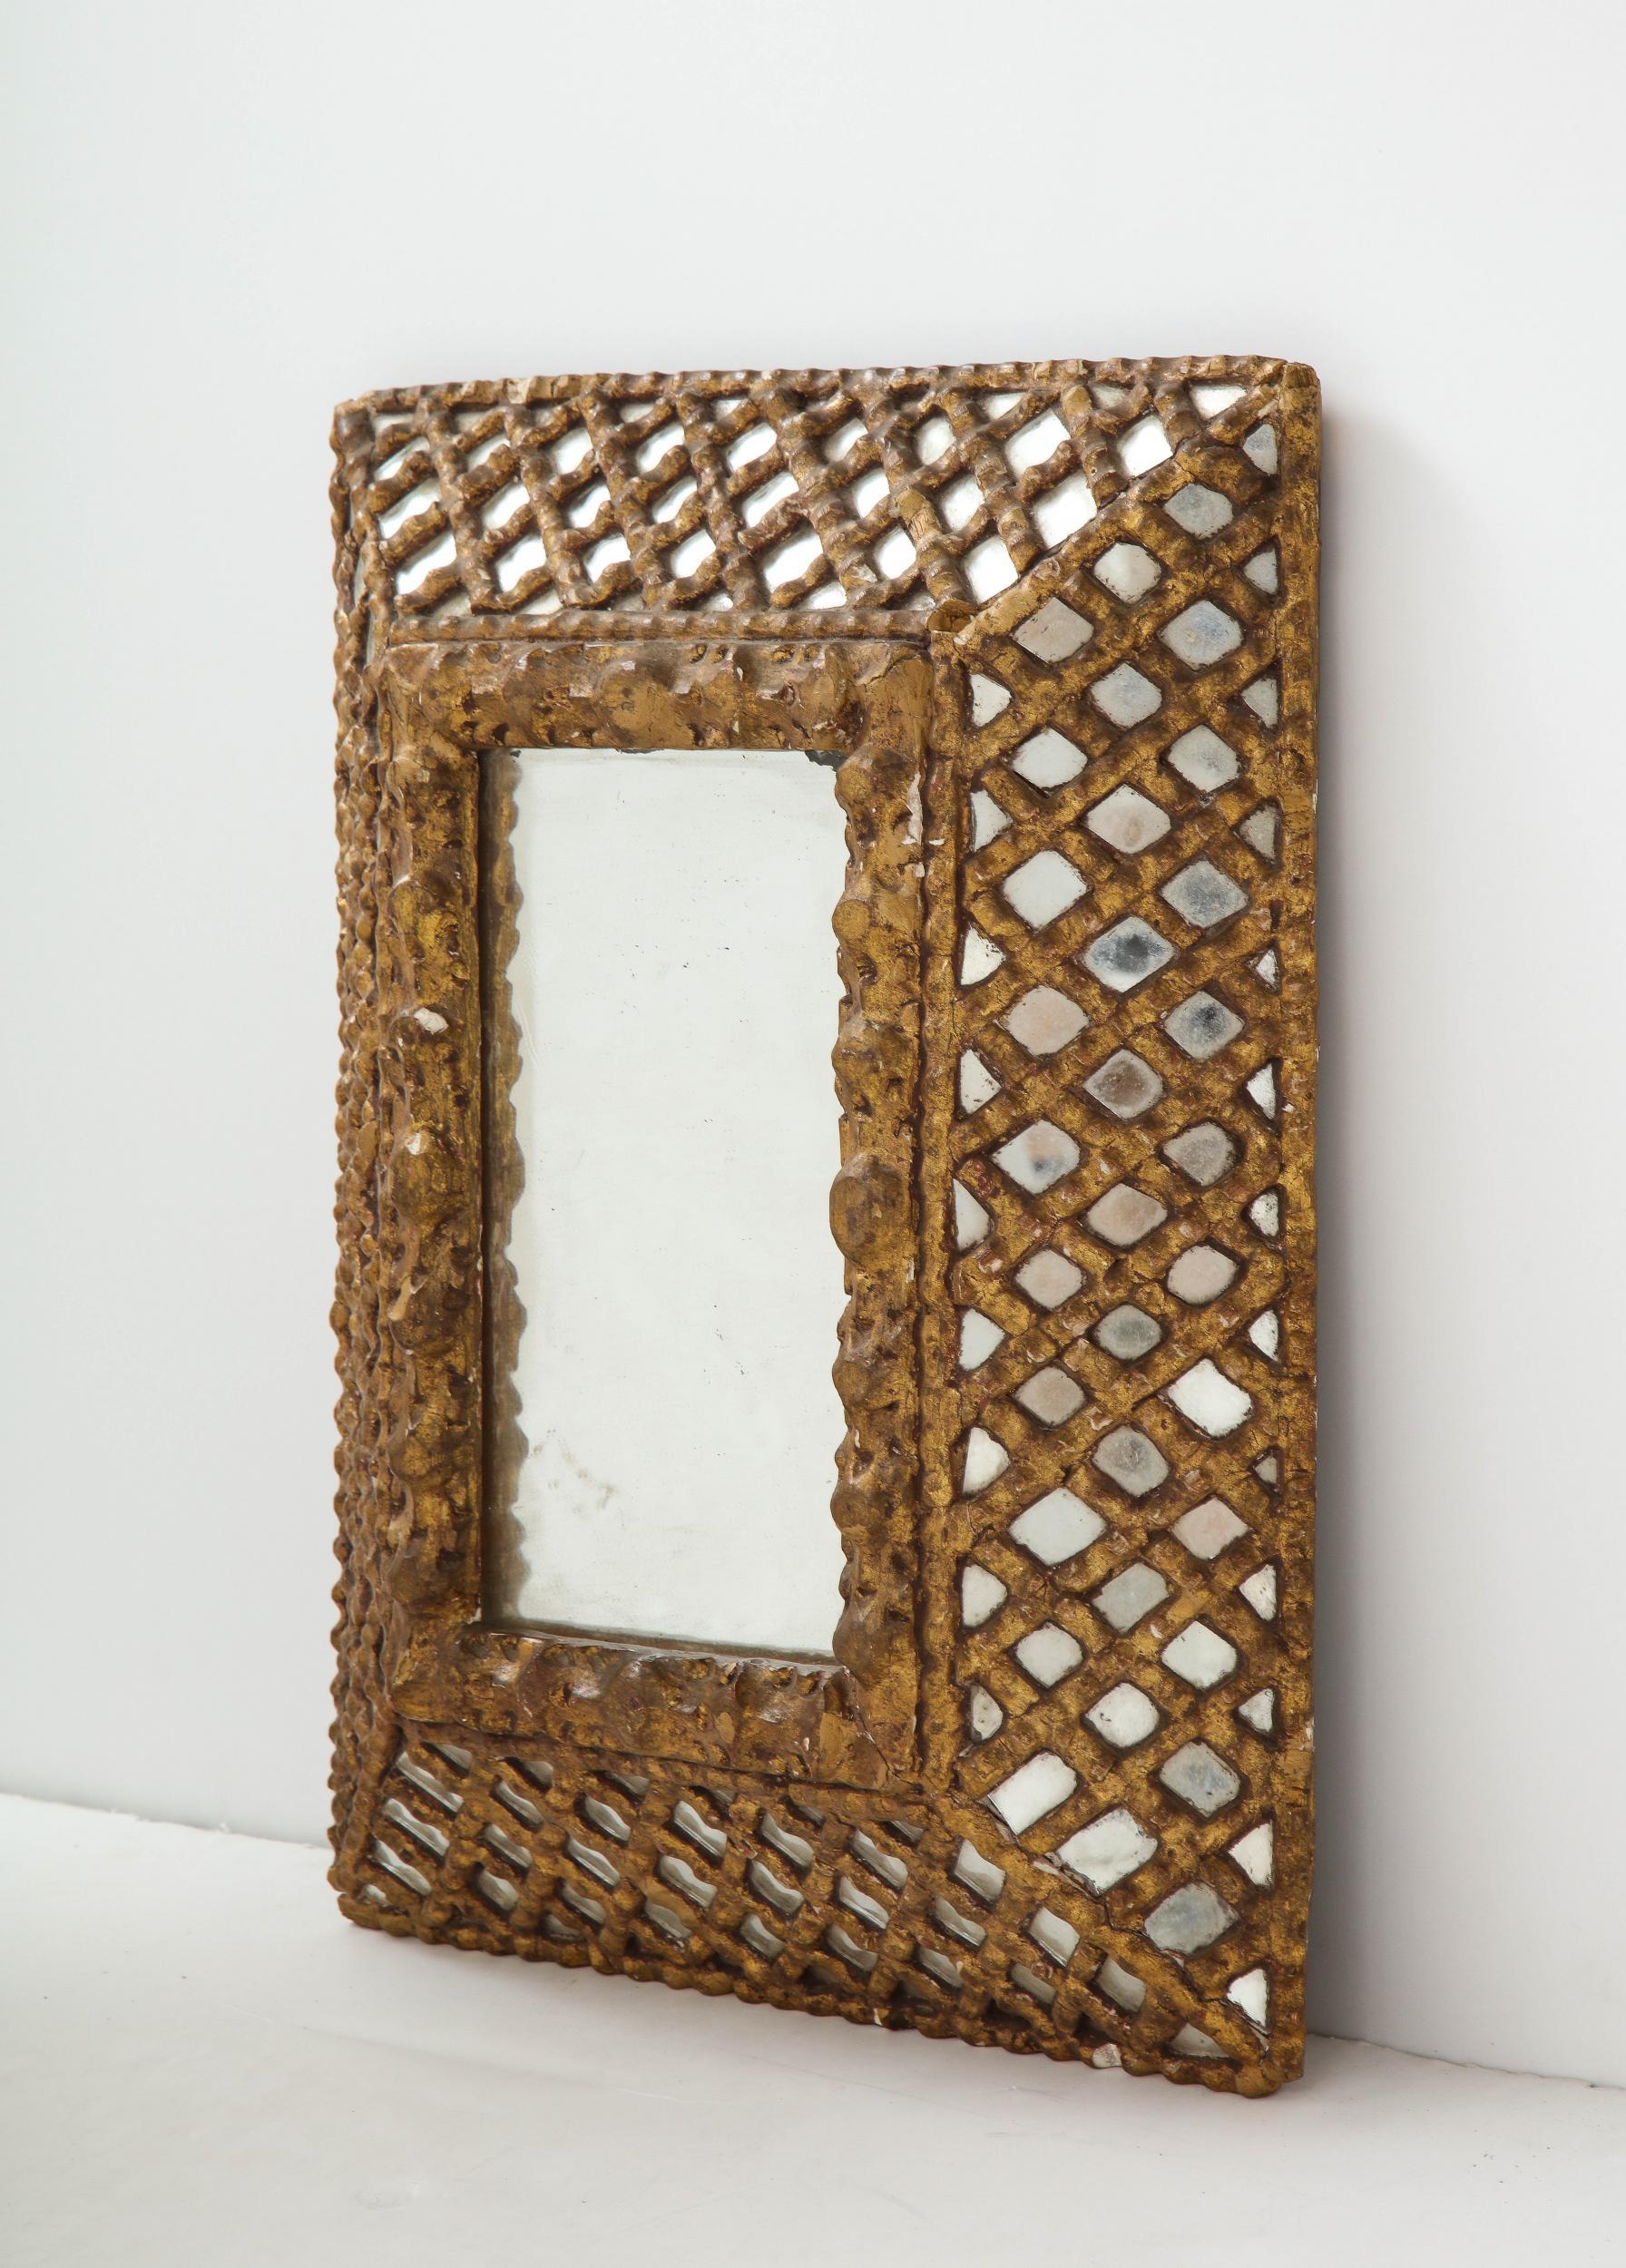 Miroir indien doré du début du 20e siècle. 

Miroir indien doré du début du 20e siècle avec des coins carrés et un cadre floral intérieur profondément sculpté. Le large cadre en treillis recouvre une bordure en miroir créant un motif complexe en